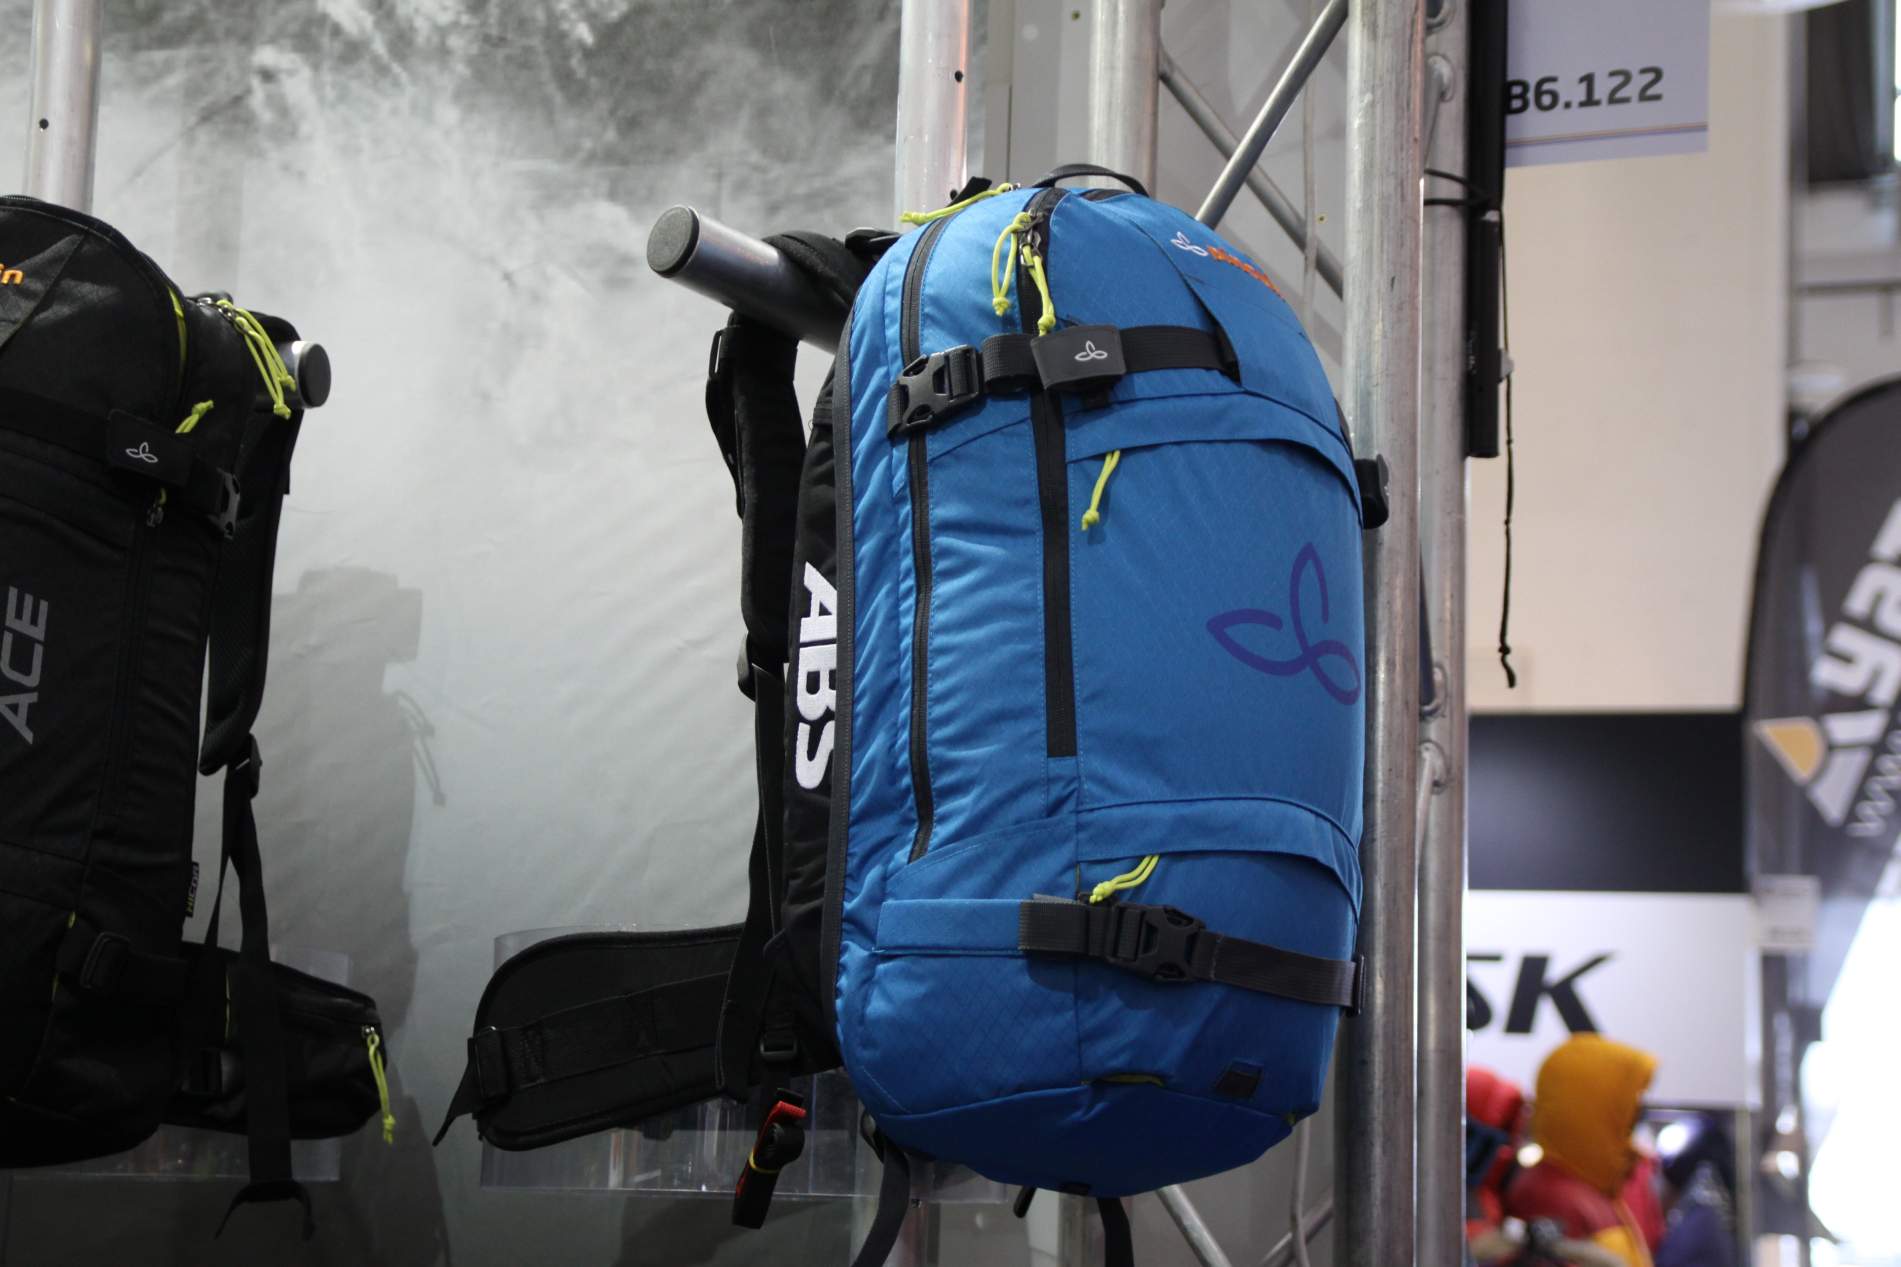 Pinguin jako první český výrobce představil (ISPO 2014) lavinový batoh se systémem ABS